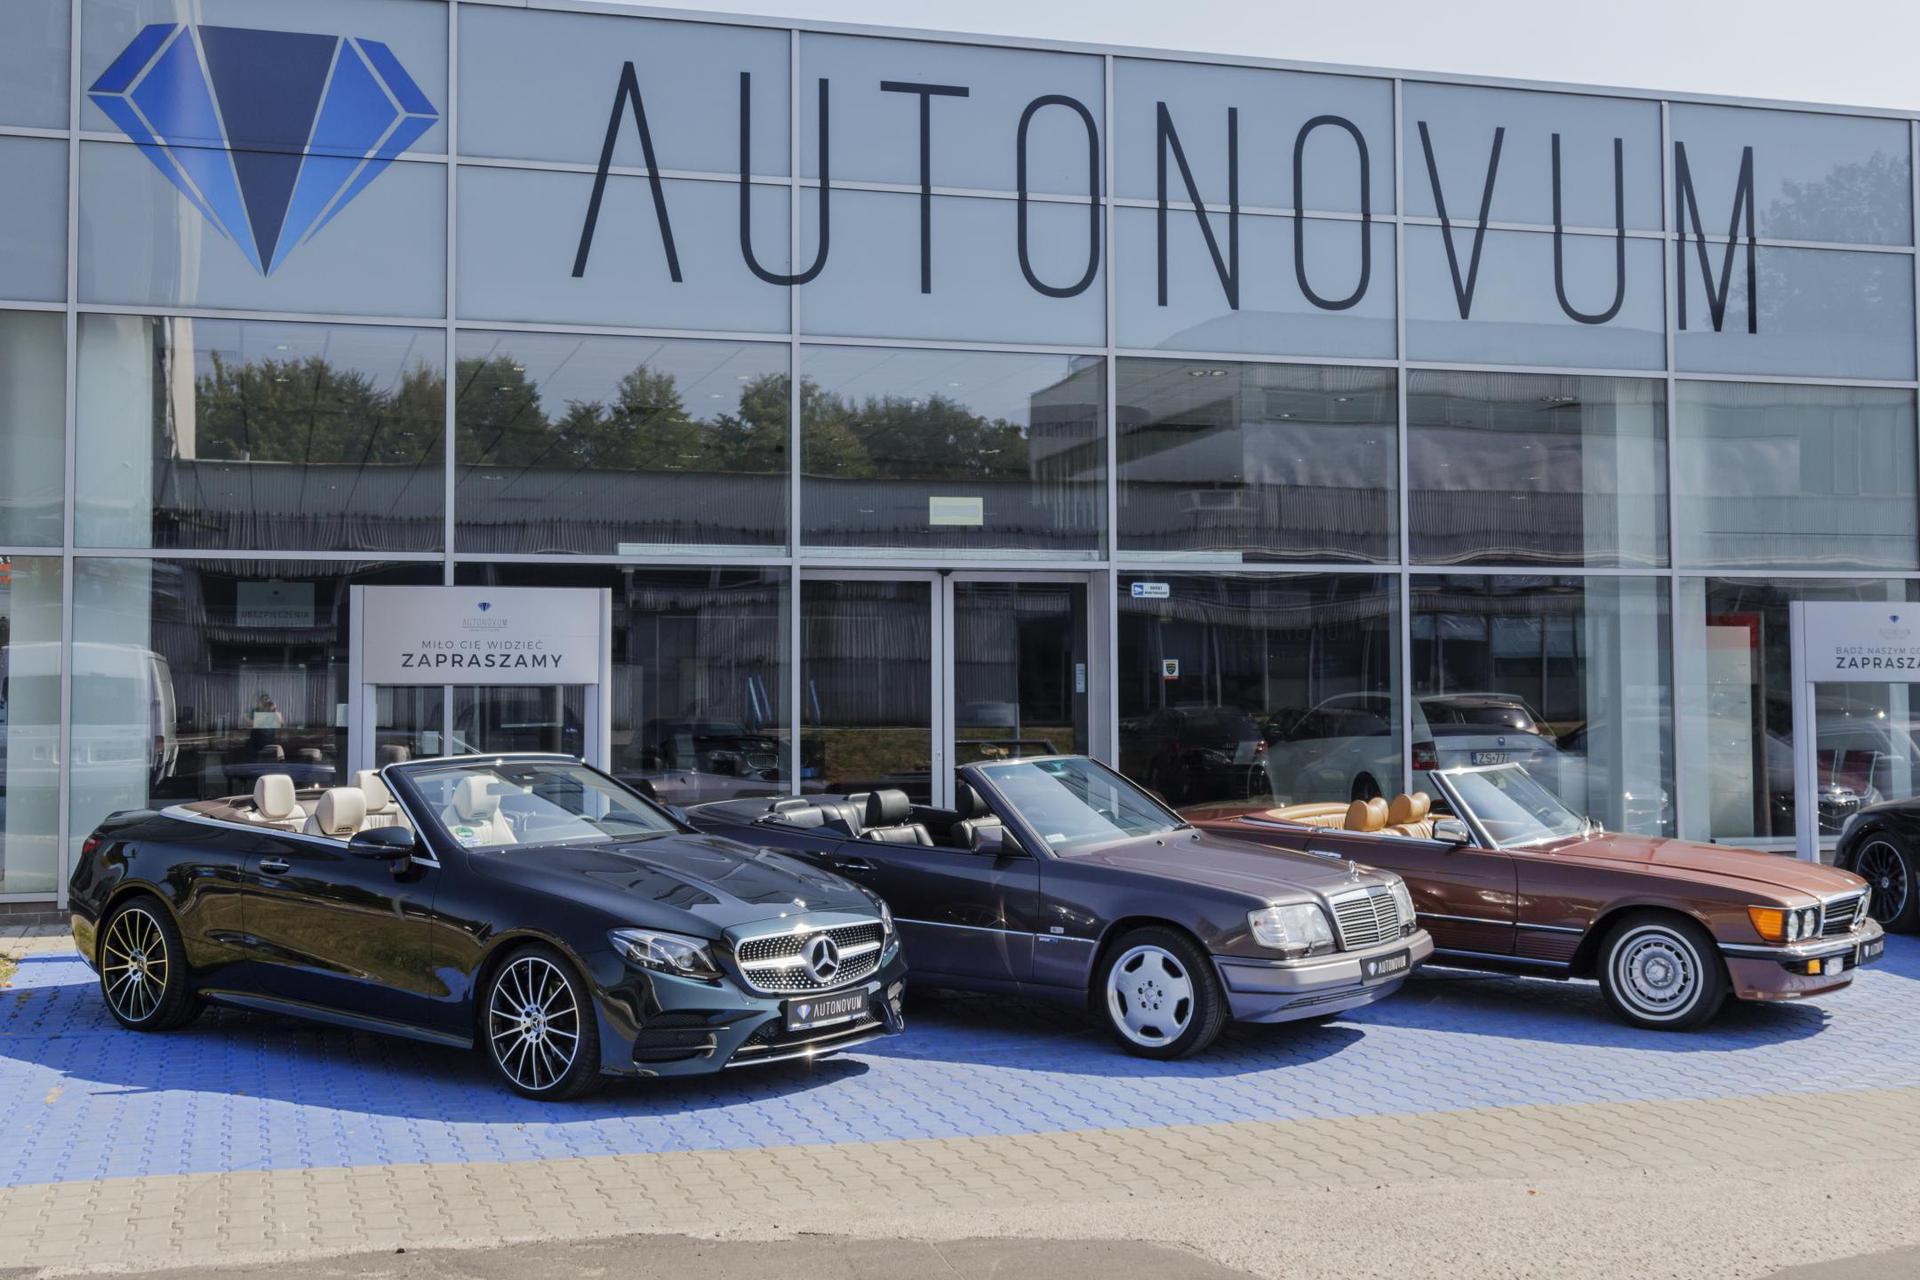 Autonovum Quality Cars Salon samochodów używanych klasy